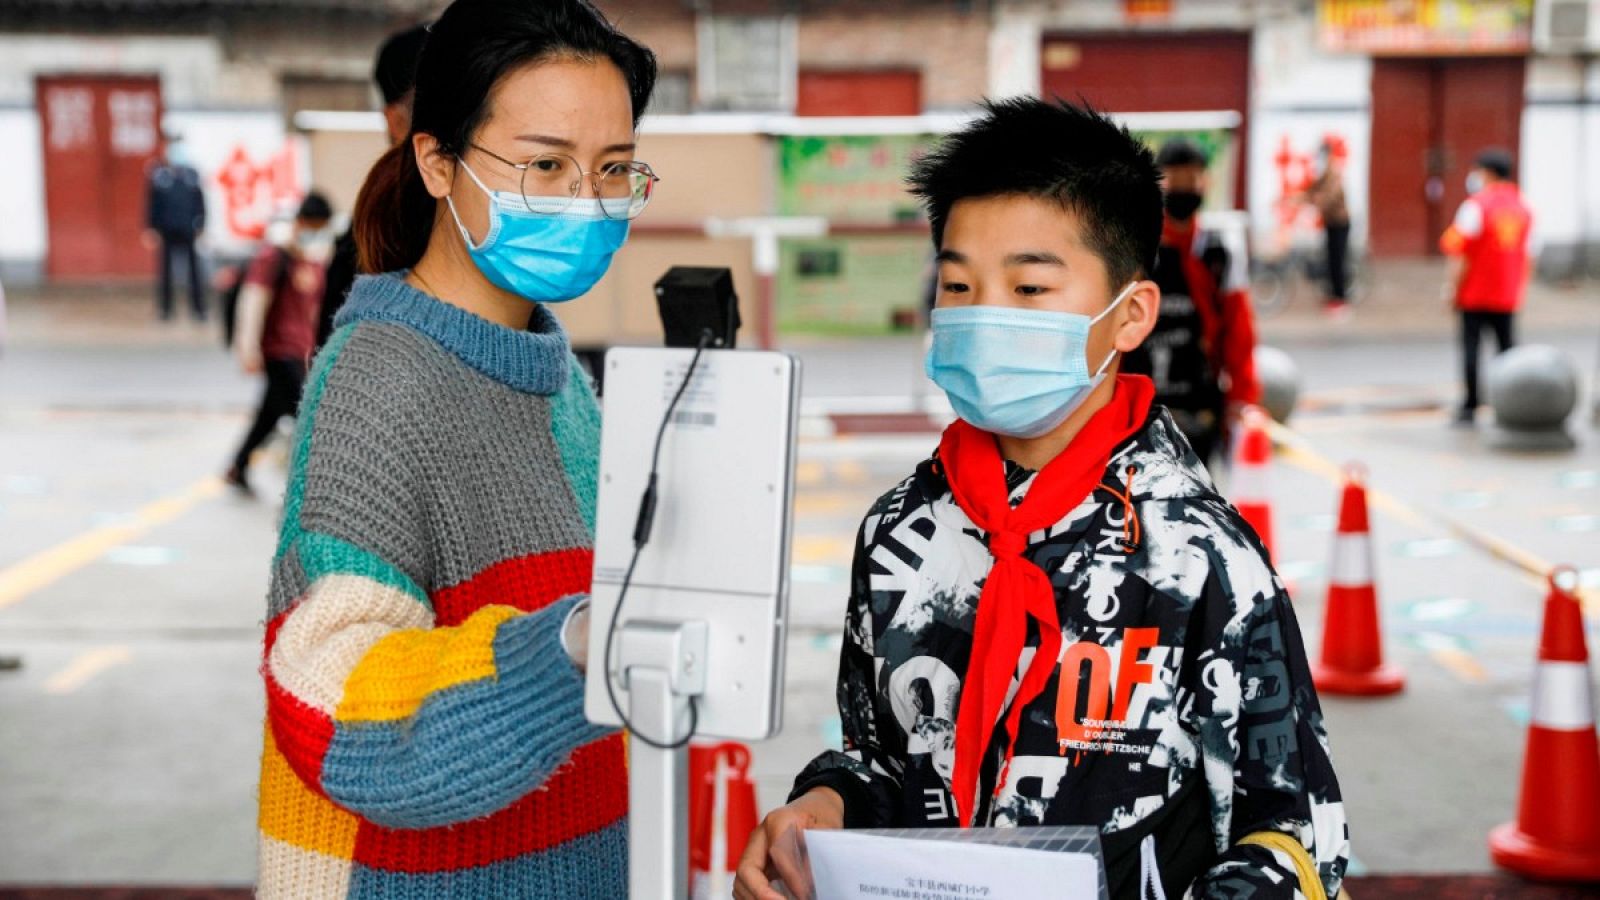 Una persona guía a un estudiante para verificar su temperatura corporal con un escáner térmico antes de ingresar a una escuela primaria en Pingdingshan, China.